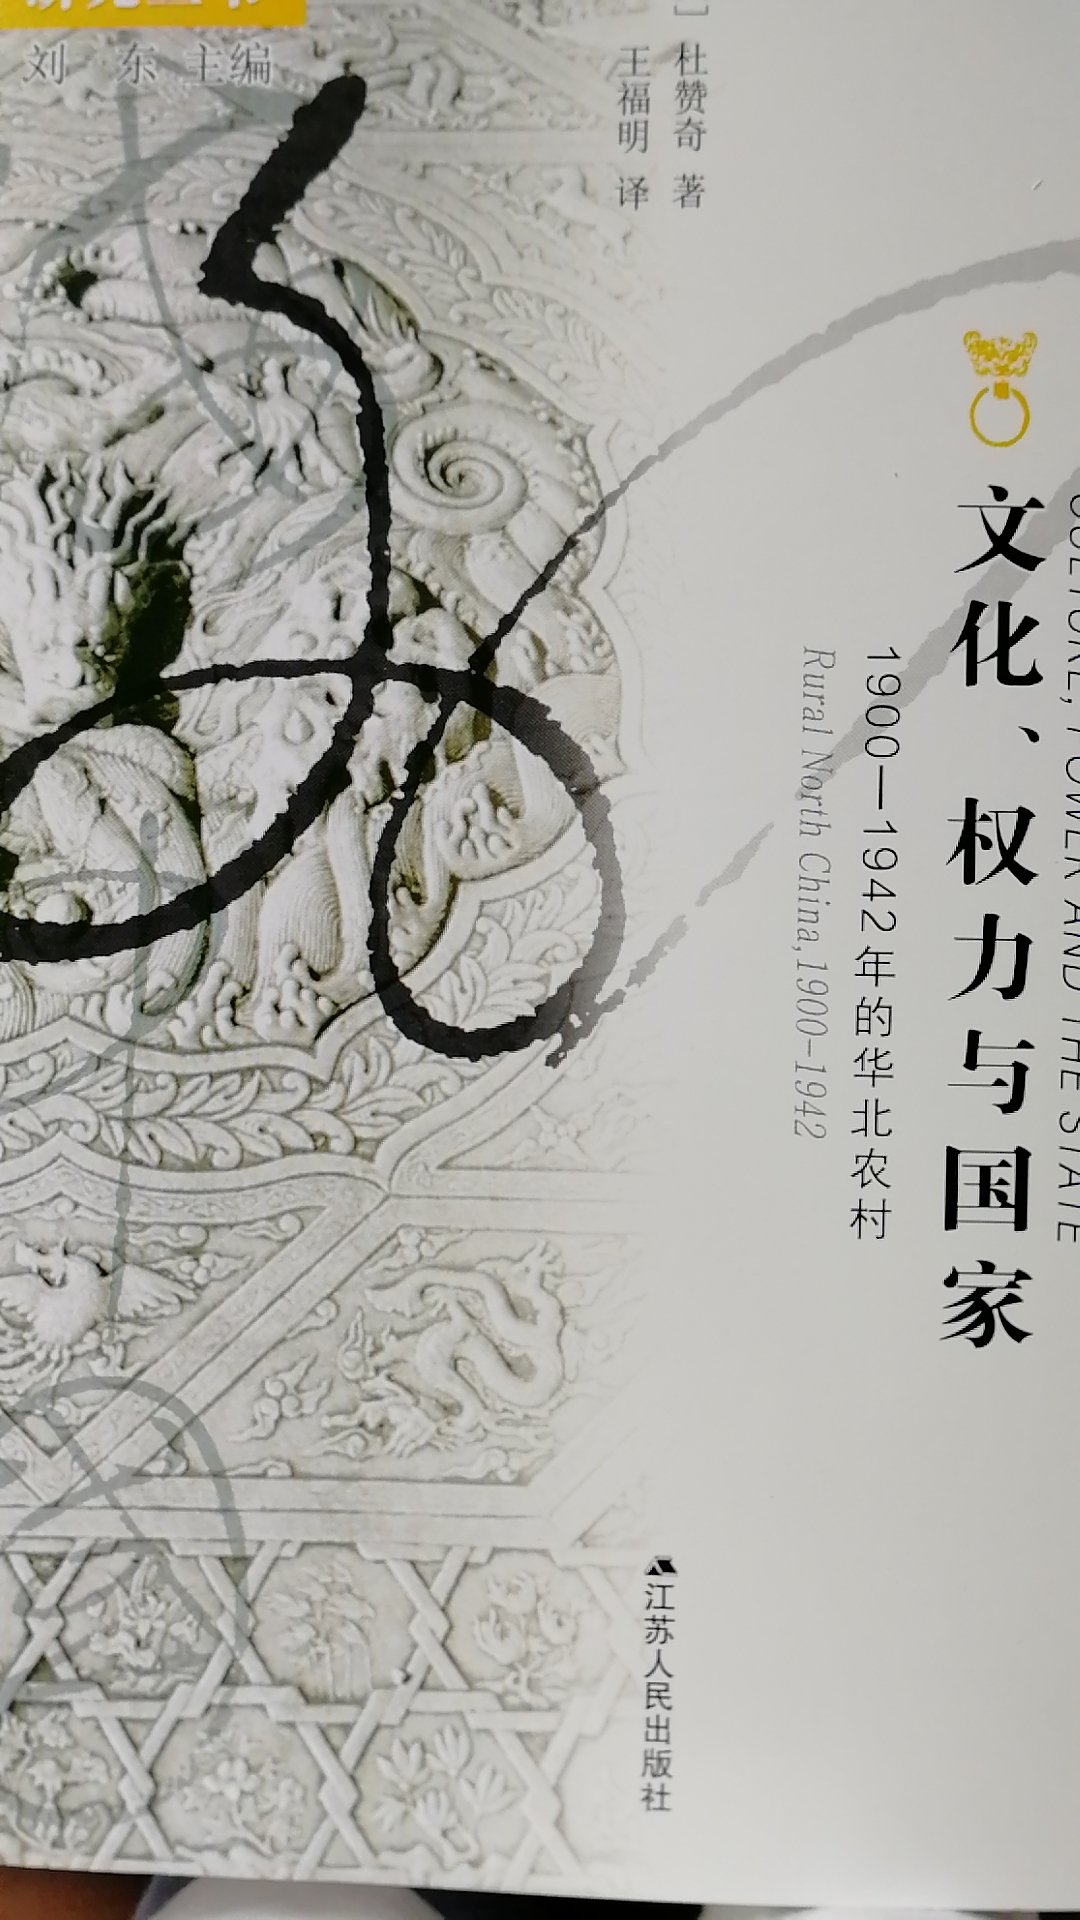 杜赞奇先生的《文化、权力与国家》一书对1900-1942年的华北农村的全景式研究让人印象深刻。